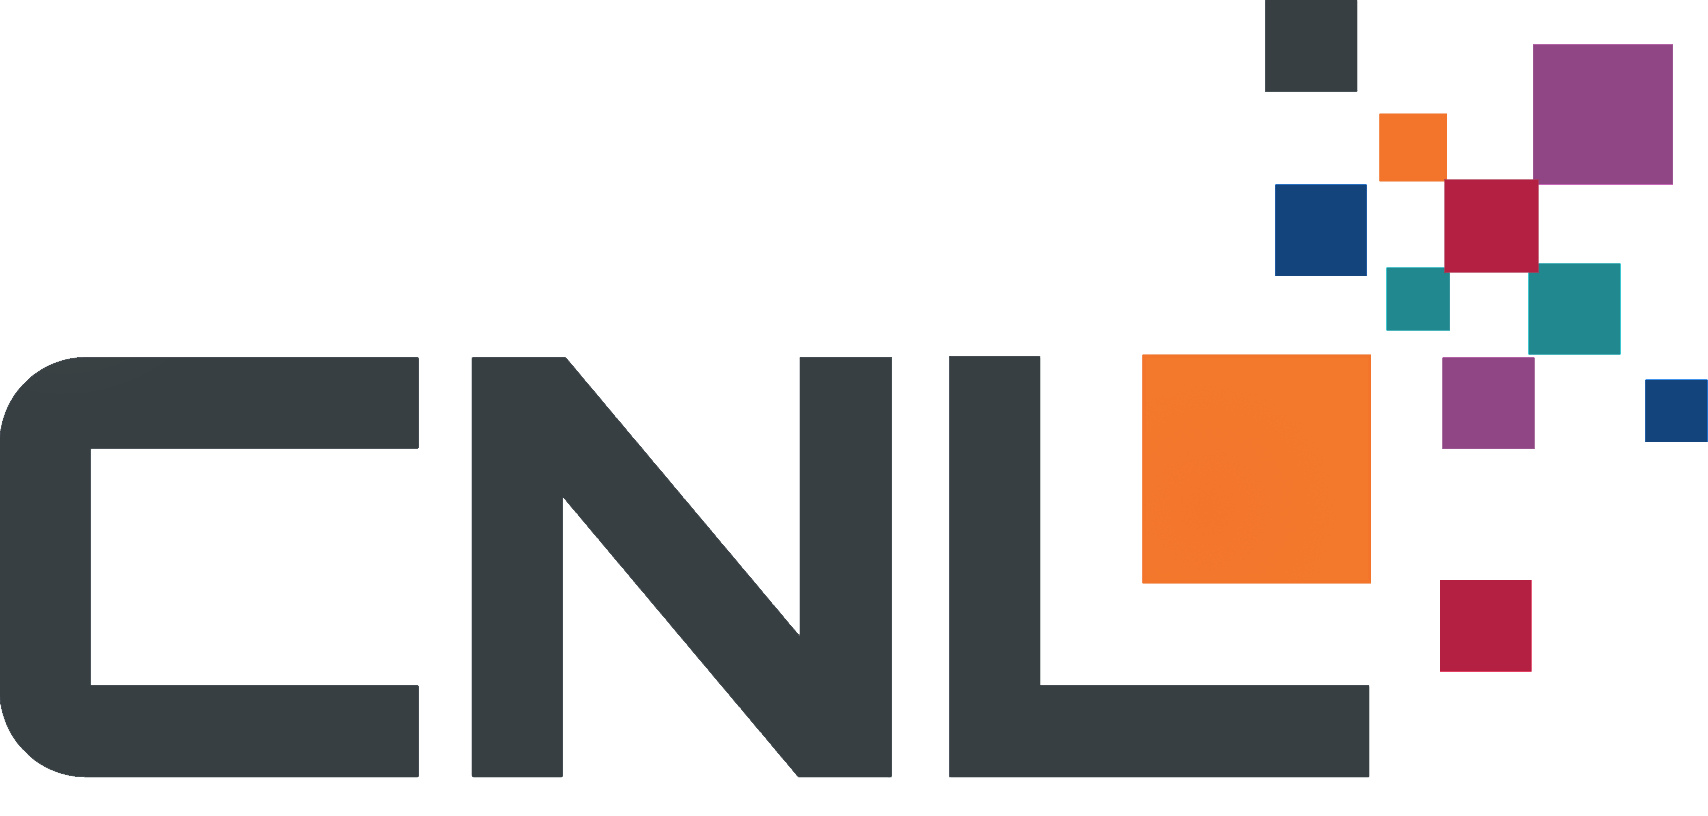 CNL GmbH